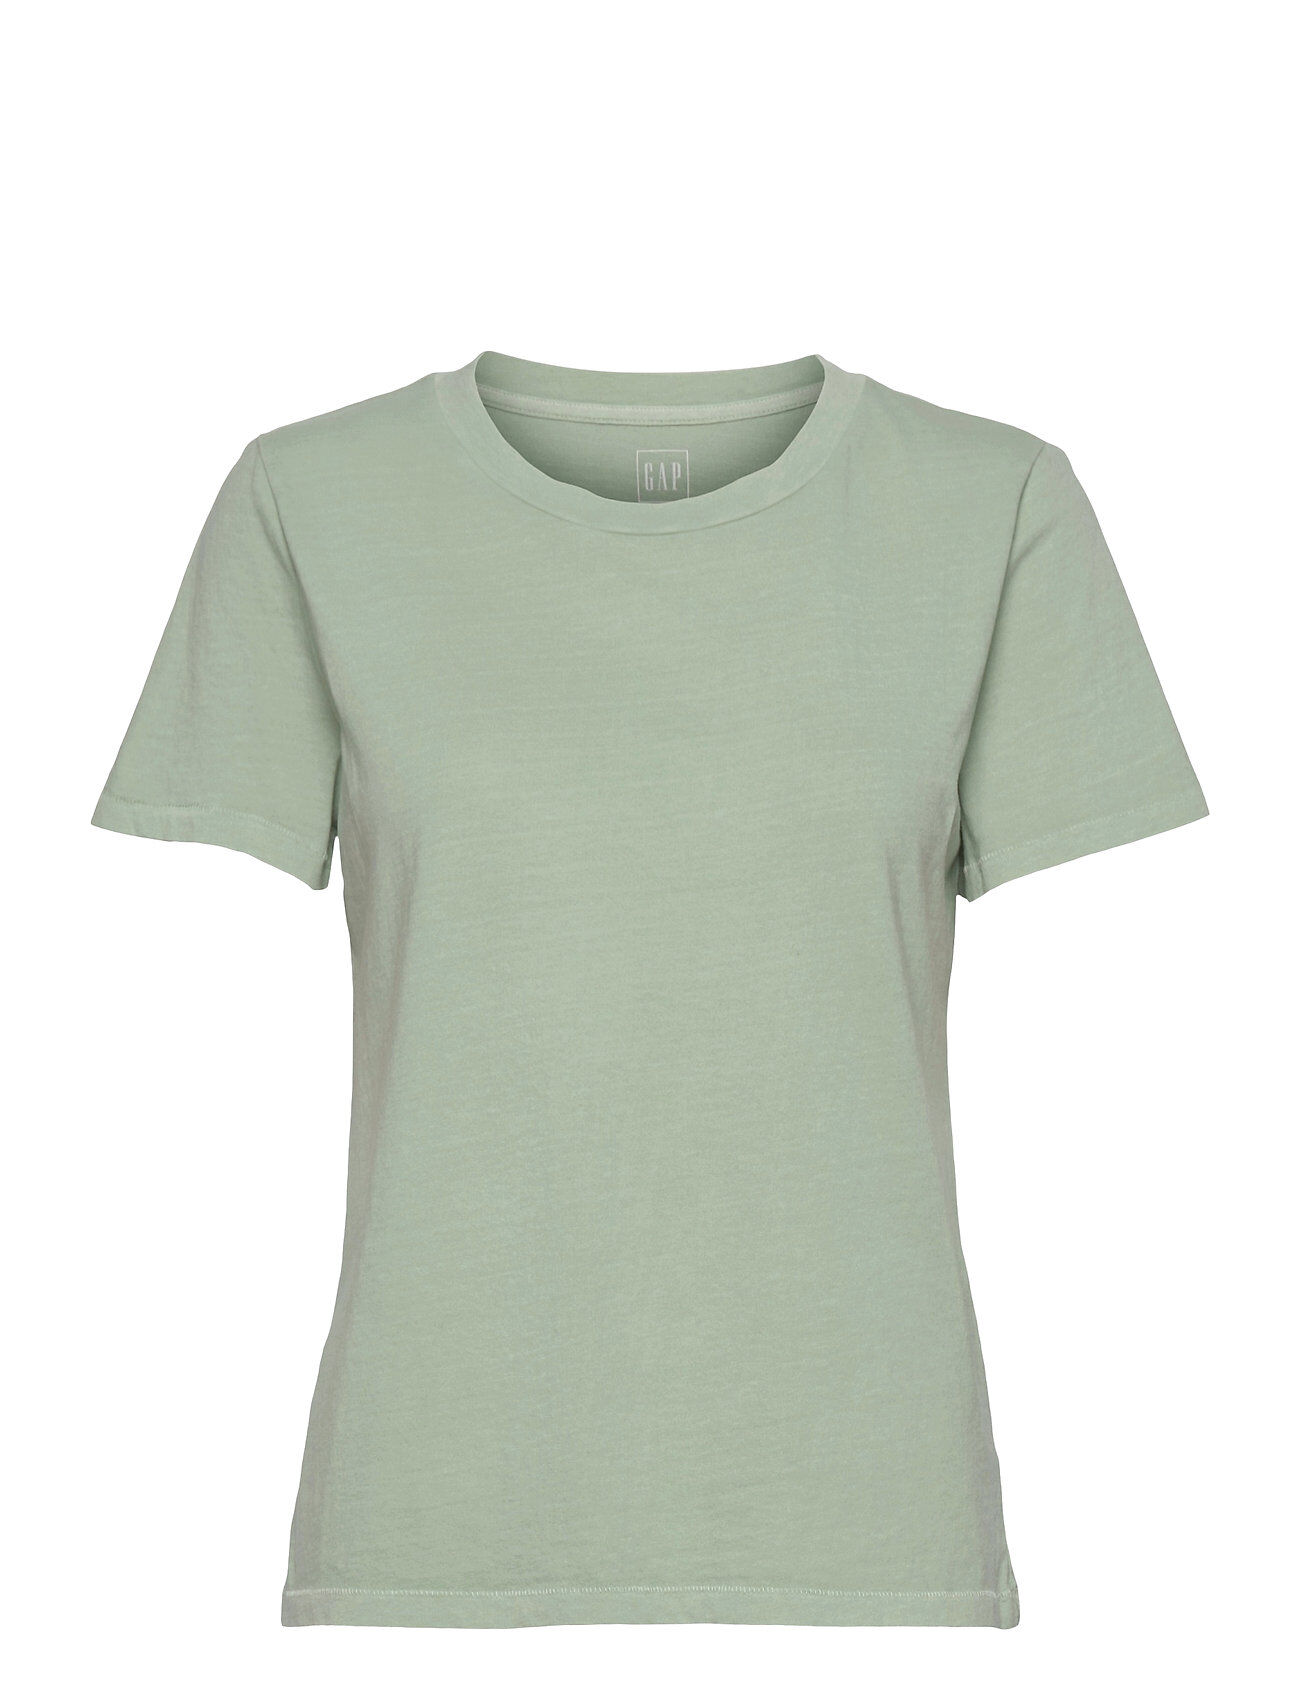 GAP 100% Organic Cotton Vintage T-Shirt T-shirts & Tops Short-sleeved Grønn GAP